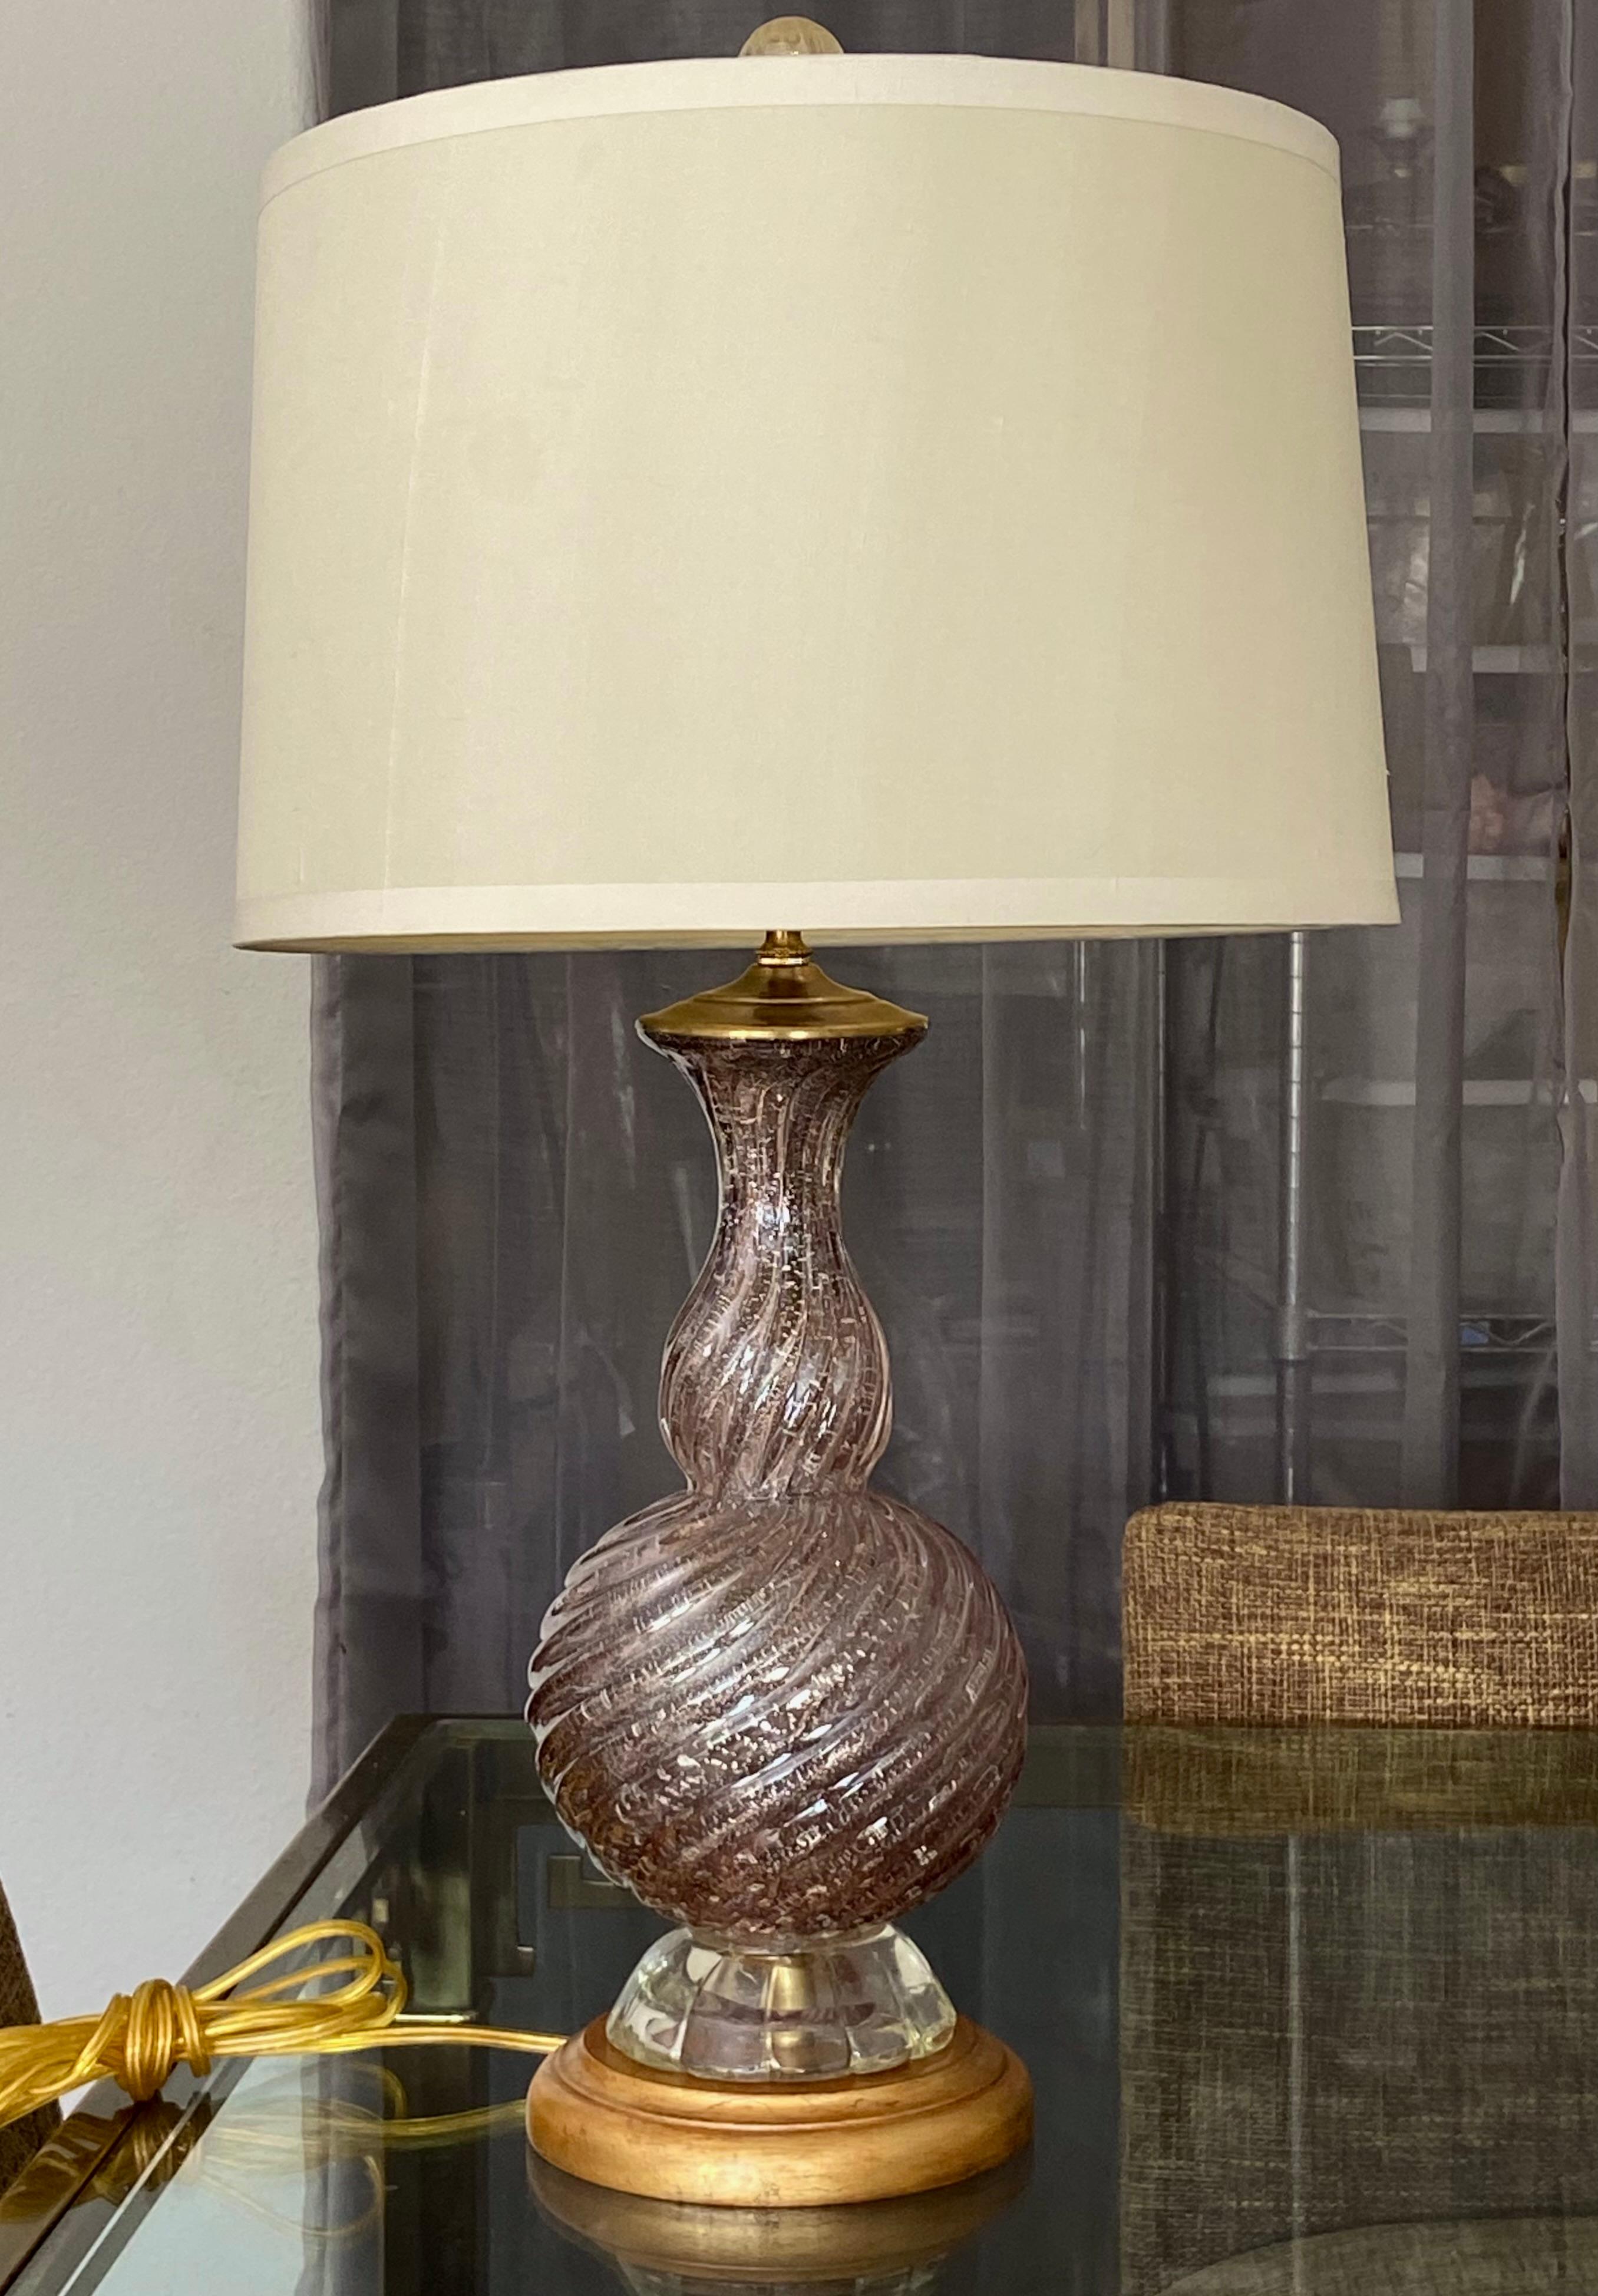 Lampe de table en verre torsadé de Murano soufflé à la main, de couleur violette, avec des mica argentés partout, sur une base en bois doré personnalisée. Recâblé avec une nouvelle prise à trois voies en laiton et un cordon. Cette belle lampe